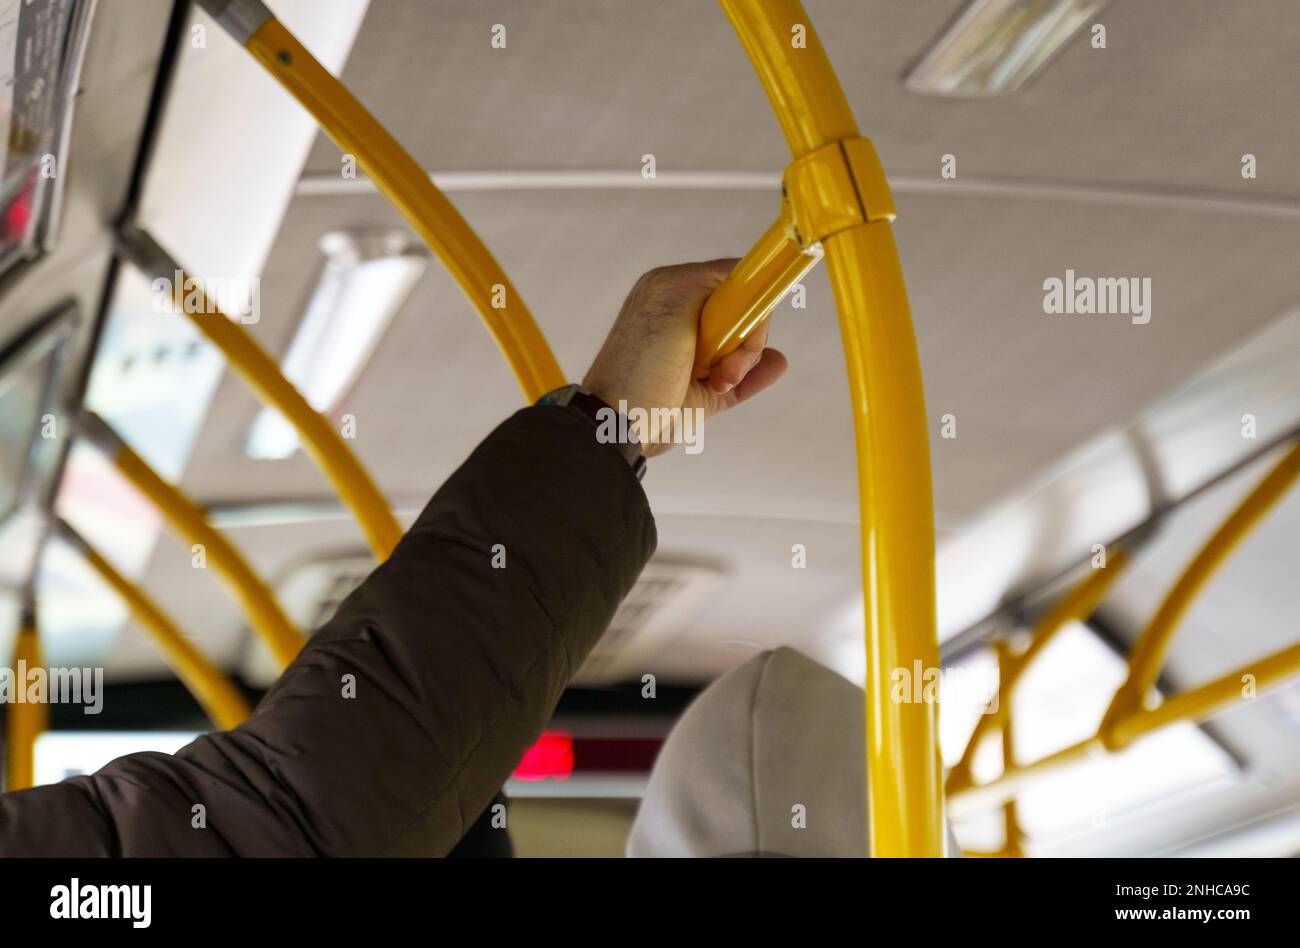 Der Mann hält sich in einem Pkw an den Geländern fest. Öffentliche Verkehrsmittel. Stockfoto